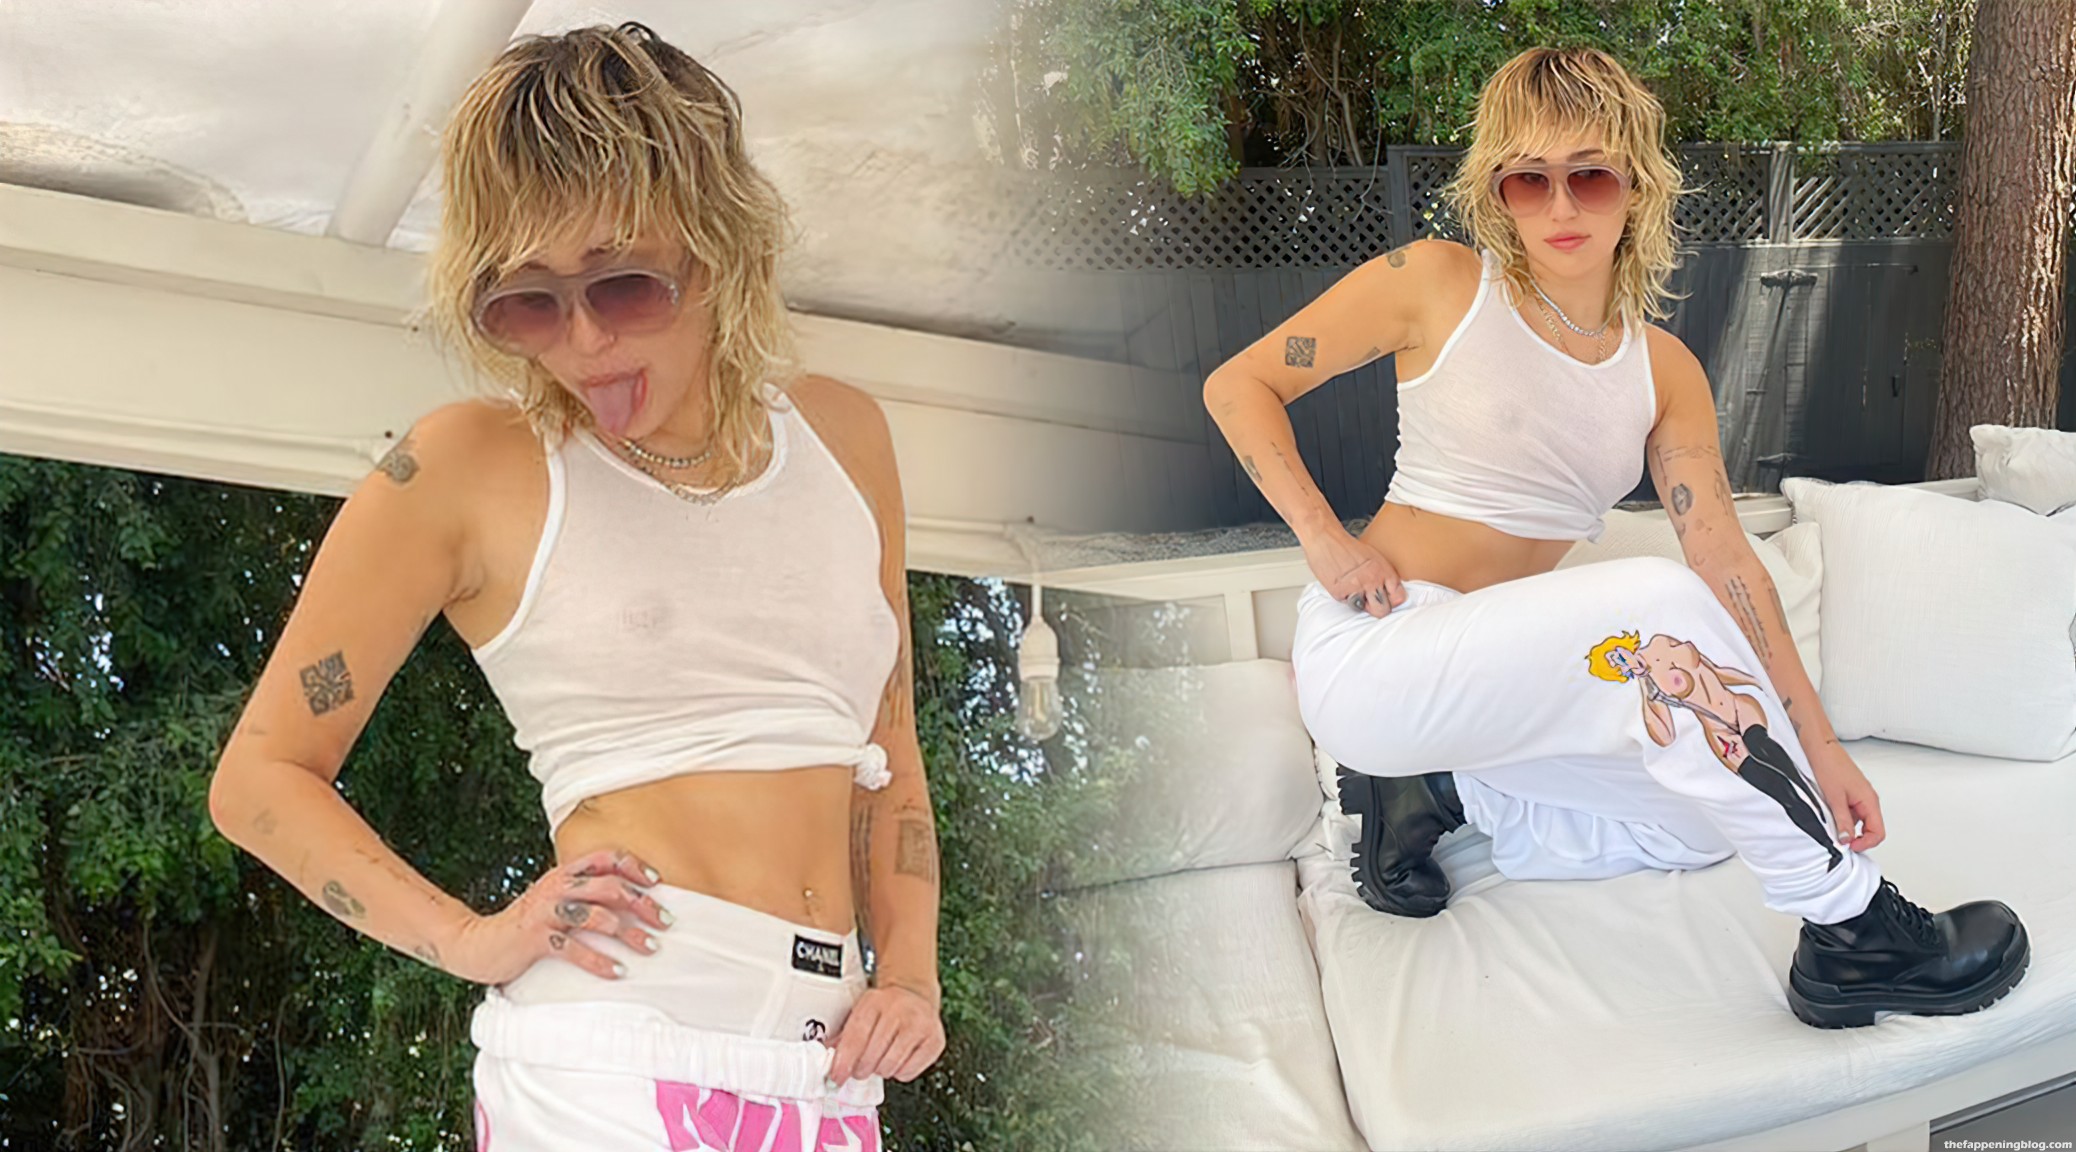 Nude forum cyrus miley Miley Cyrus